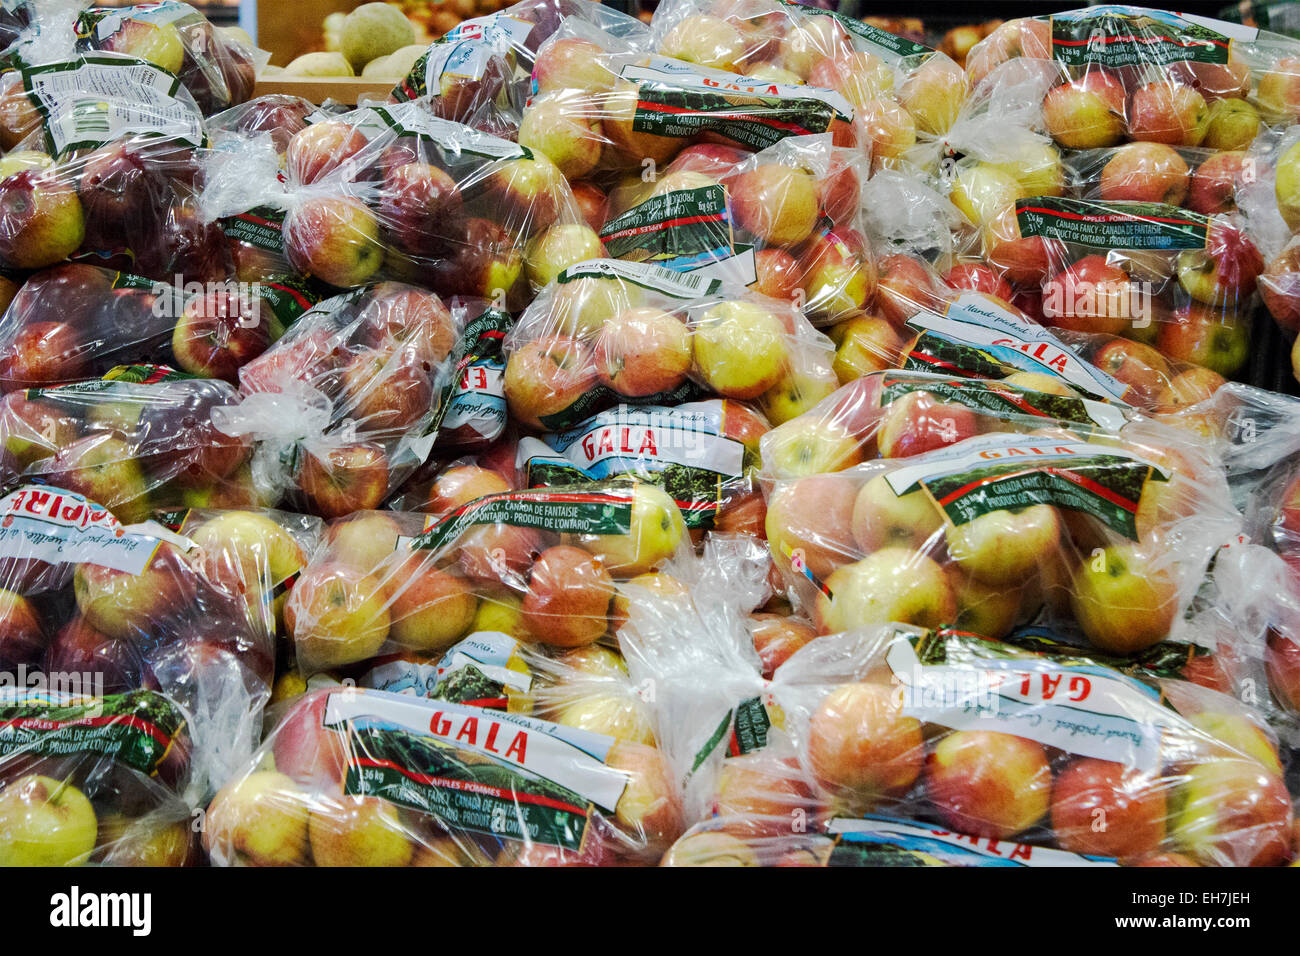 Taschen der Gala Äpfel in einem Supermarkt-Display im Bereich Obst und Gemüse Stockfoto